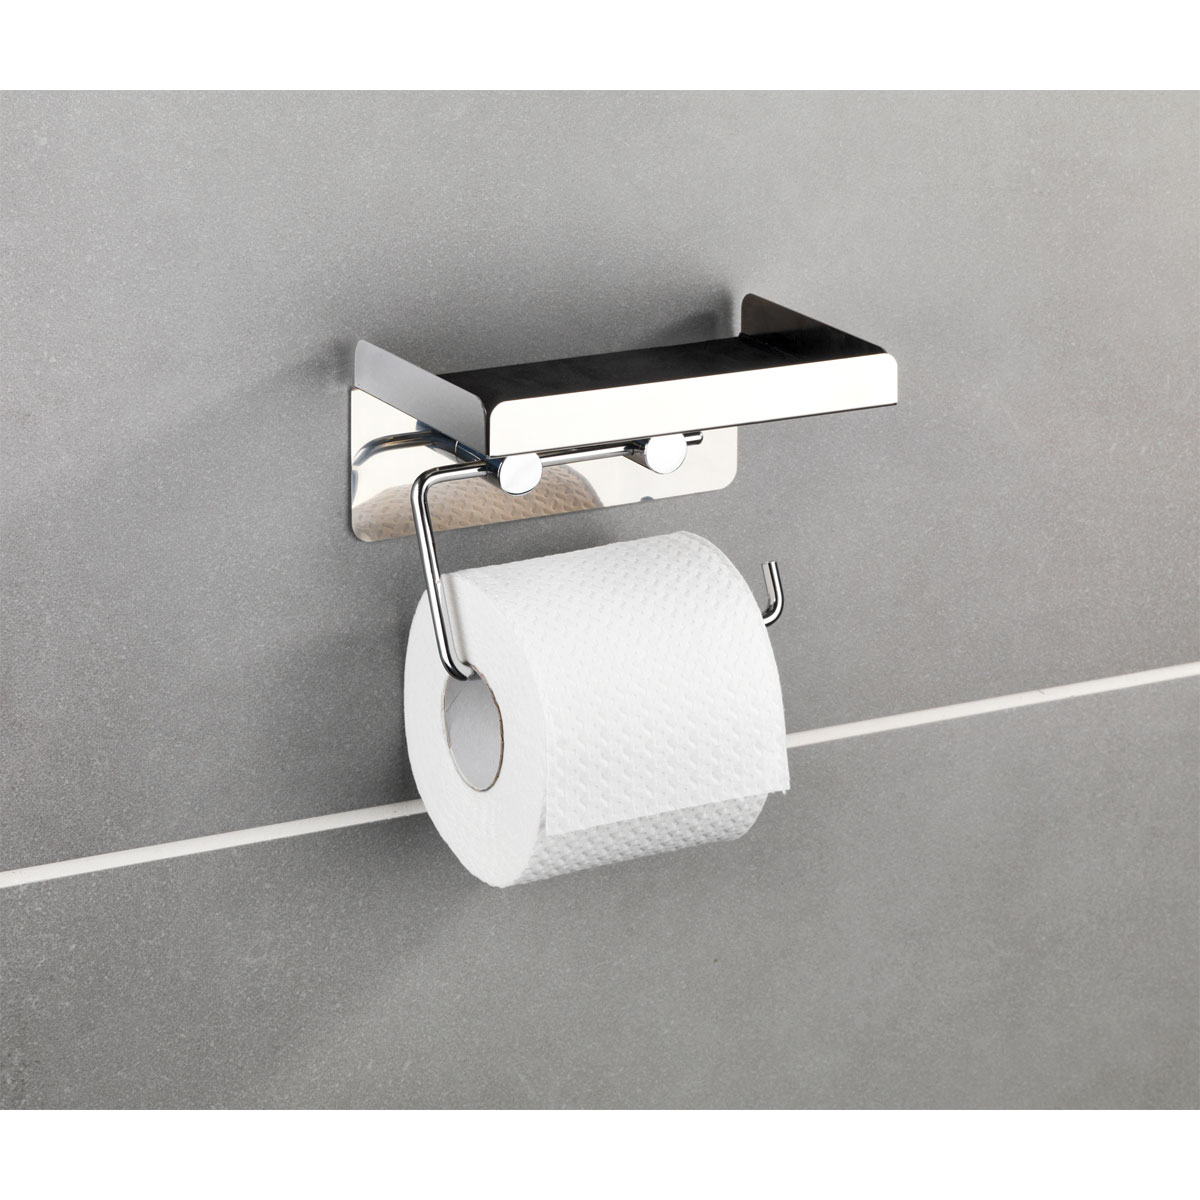 Edelstahl Wenko Toilettenpapierhalter 2 in 1 rostfrei | 514880